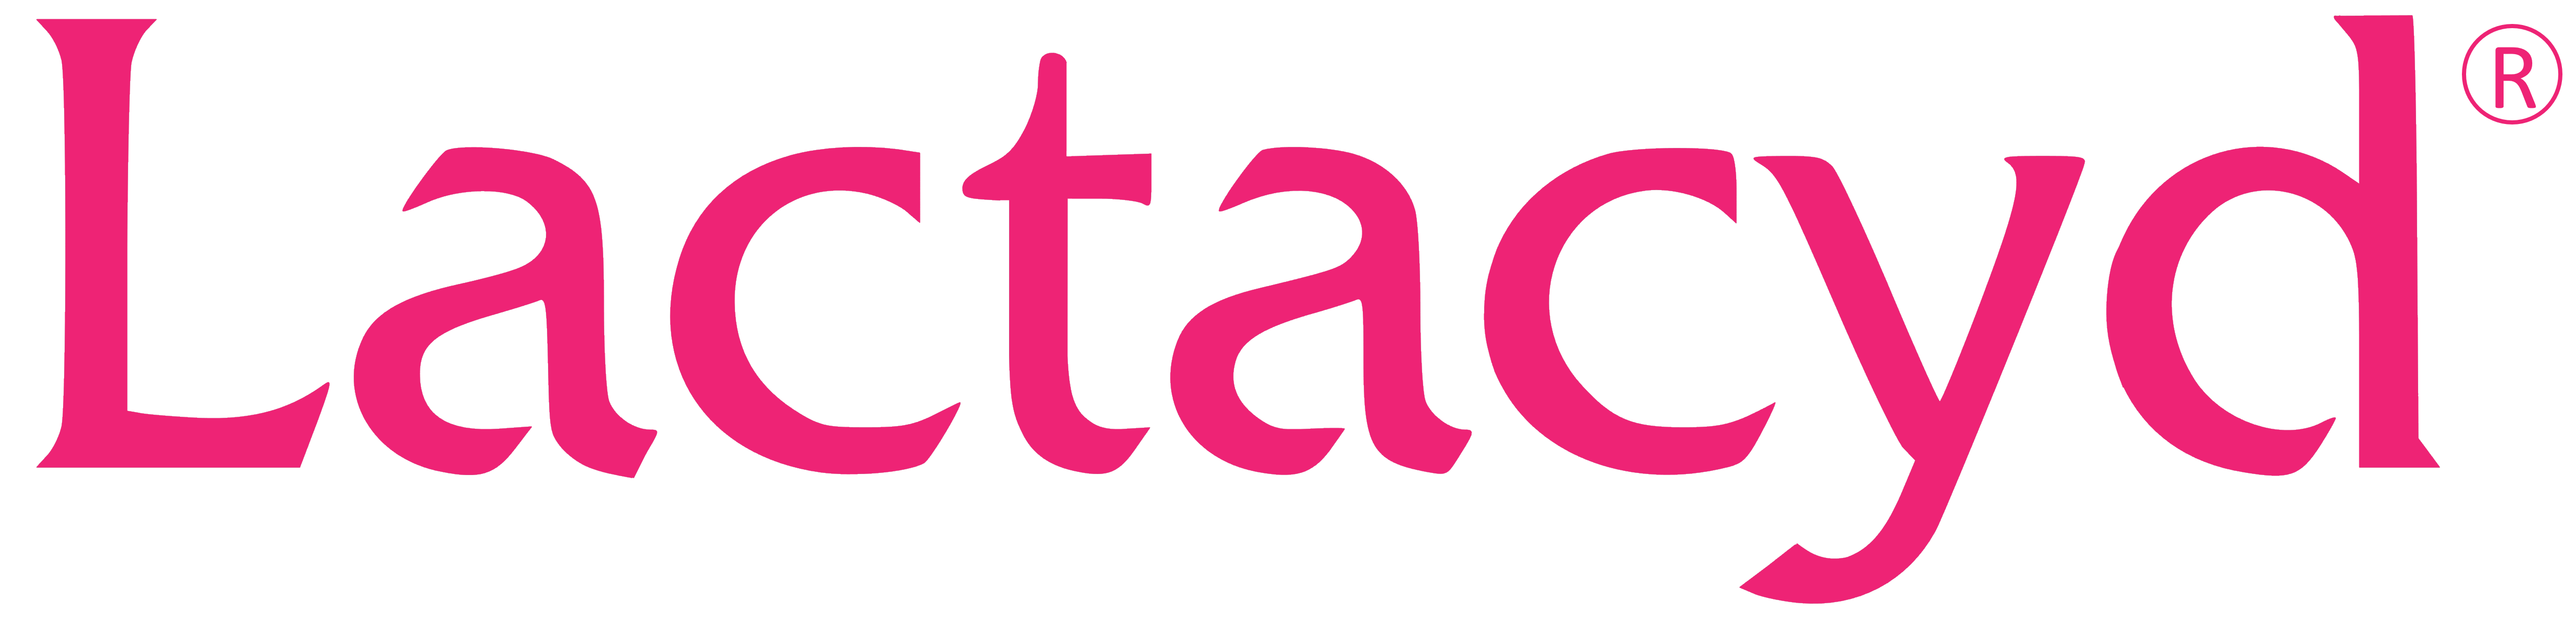 Lactacyd logo, logotype